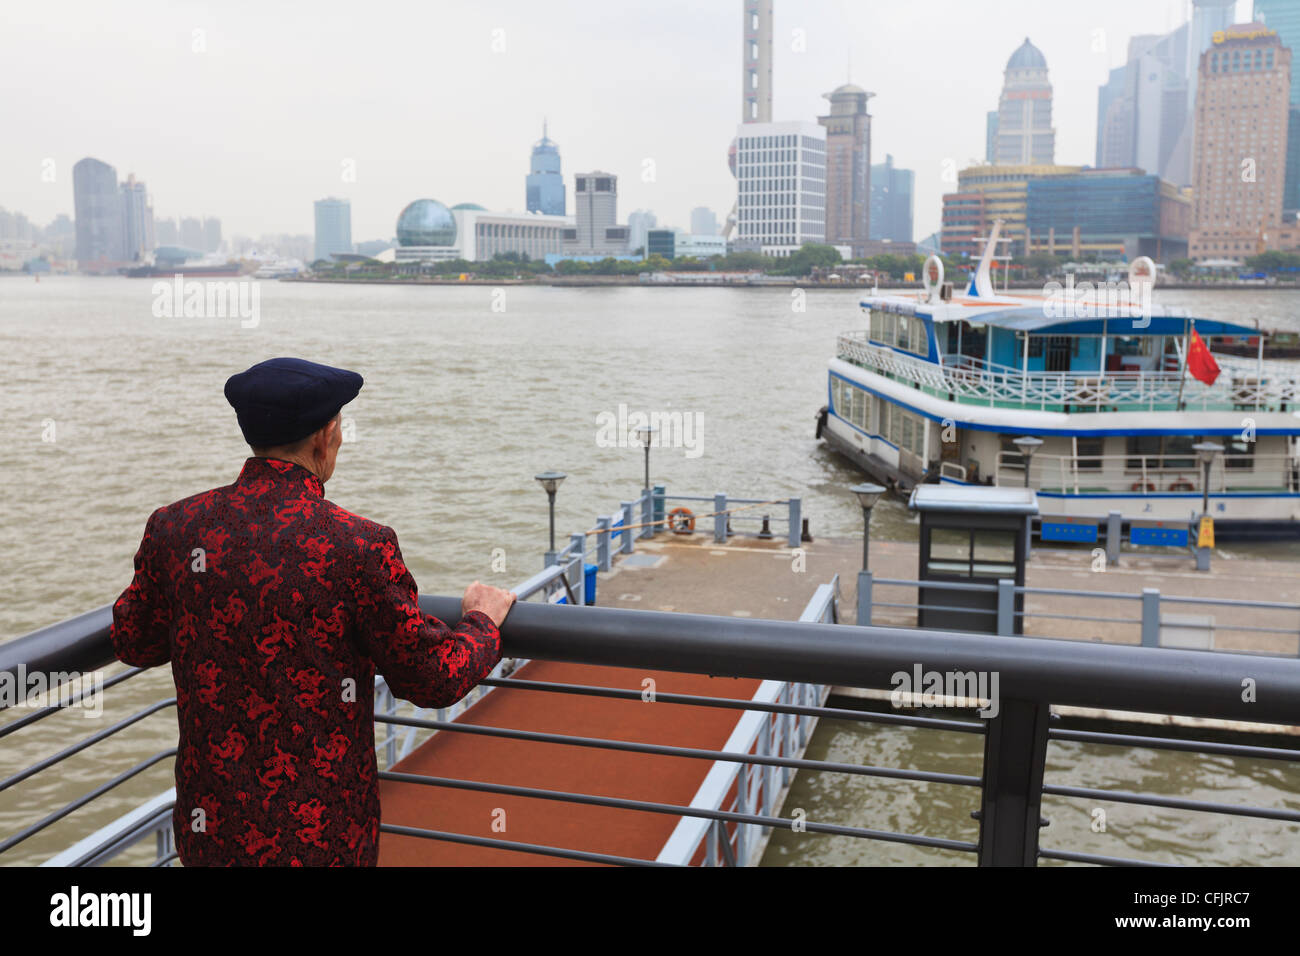 Un homme regardant des ferries traversant la rivière Huangpu, Shanghai, Chine, Asie Banque D'Images